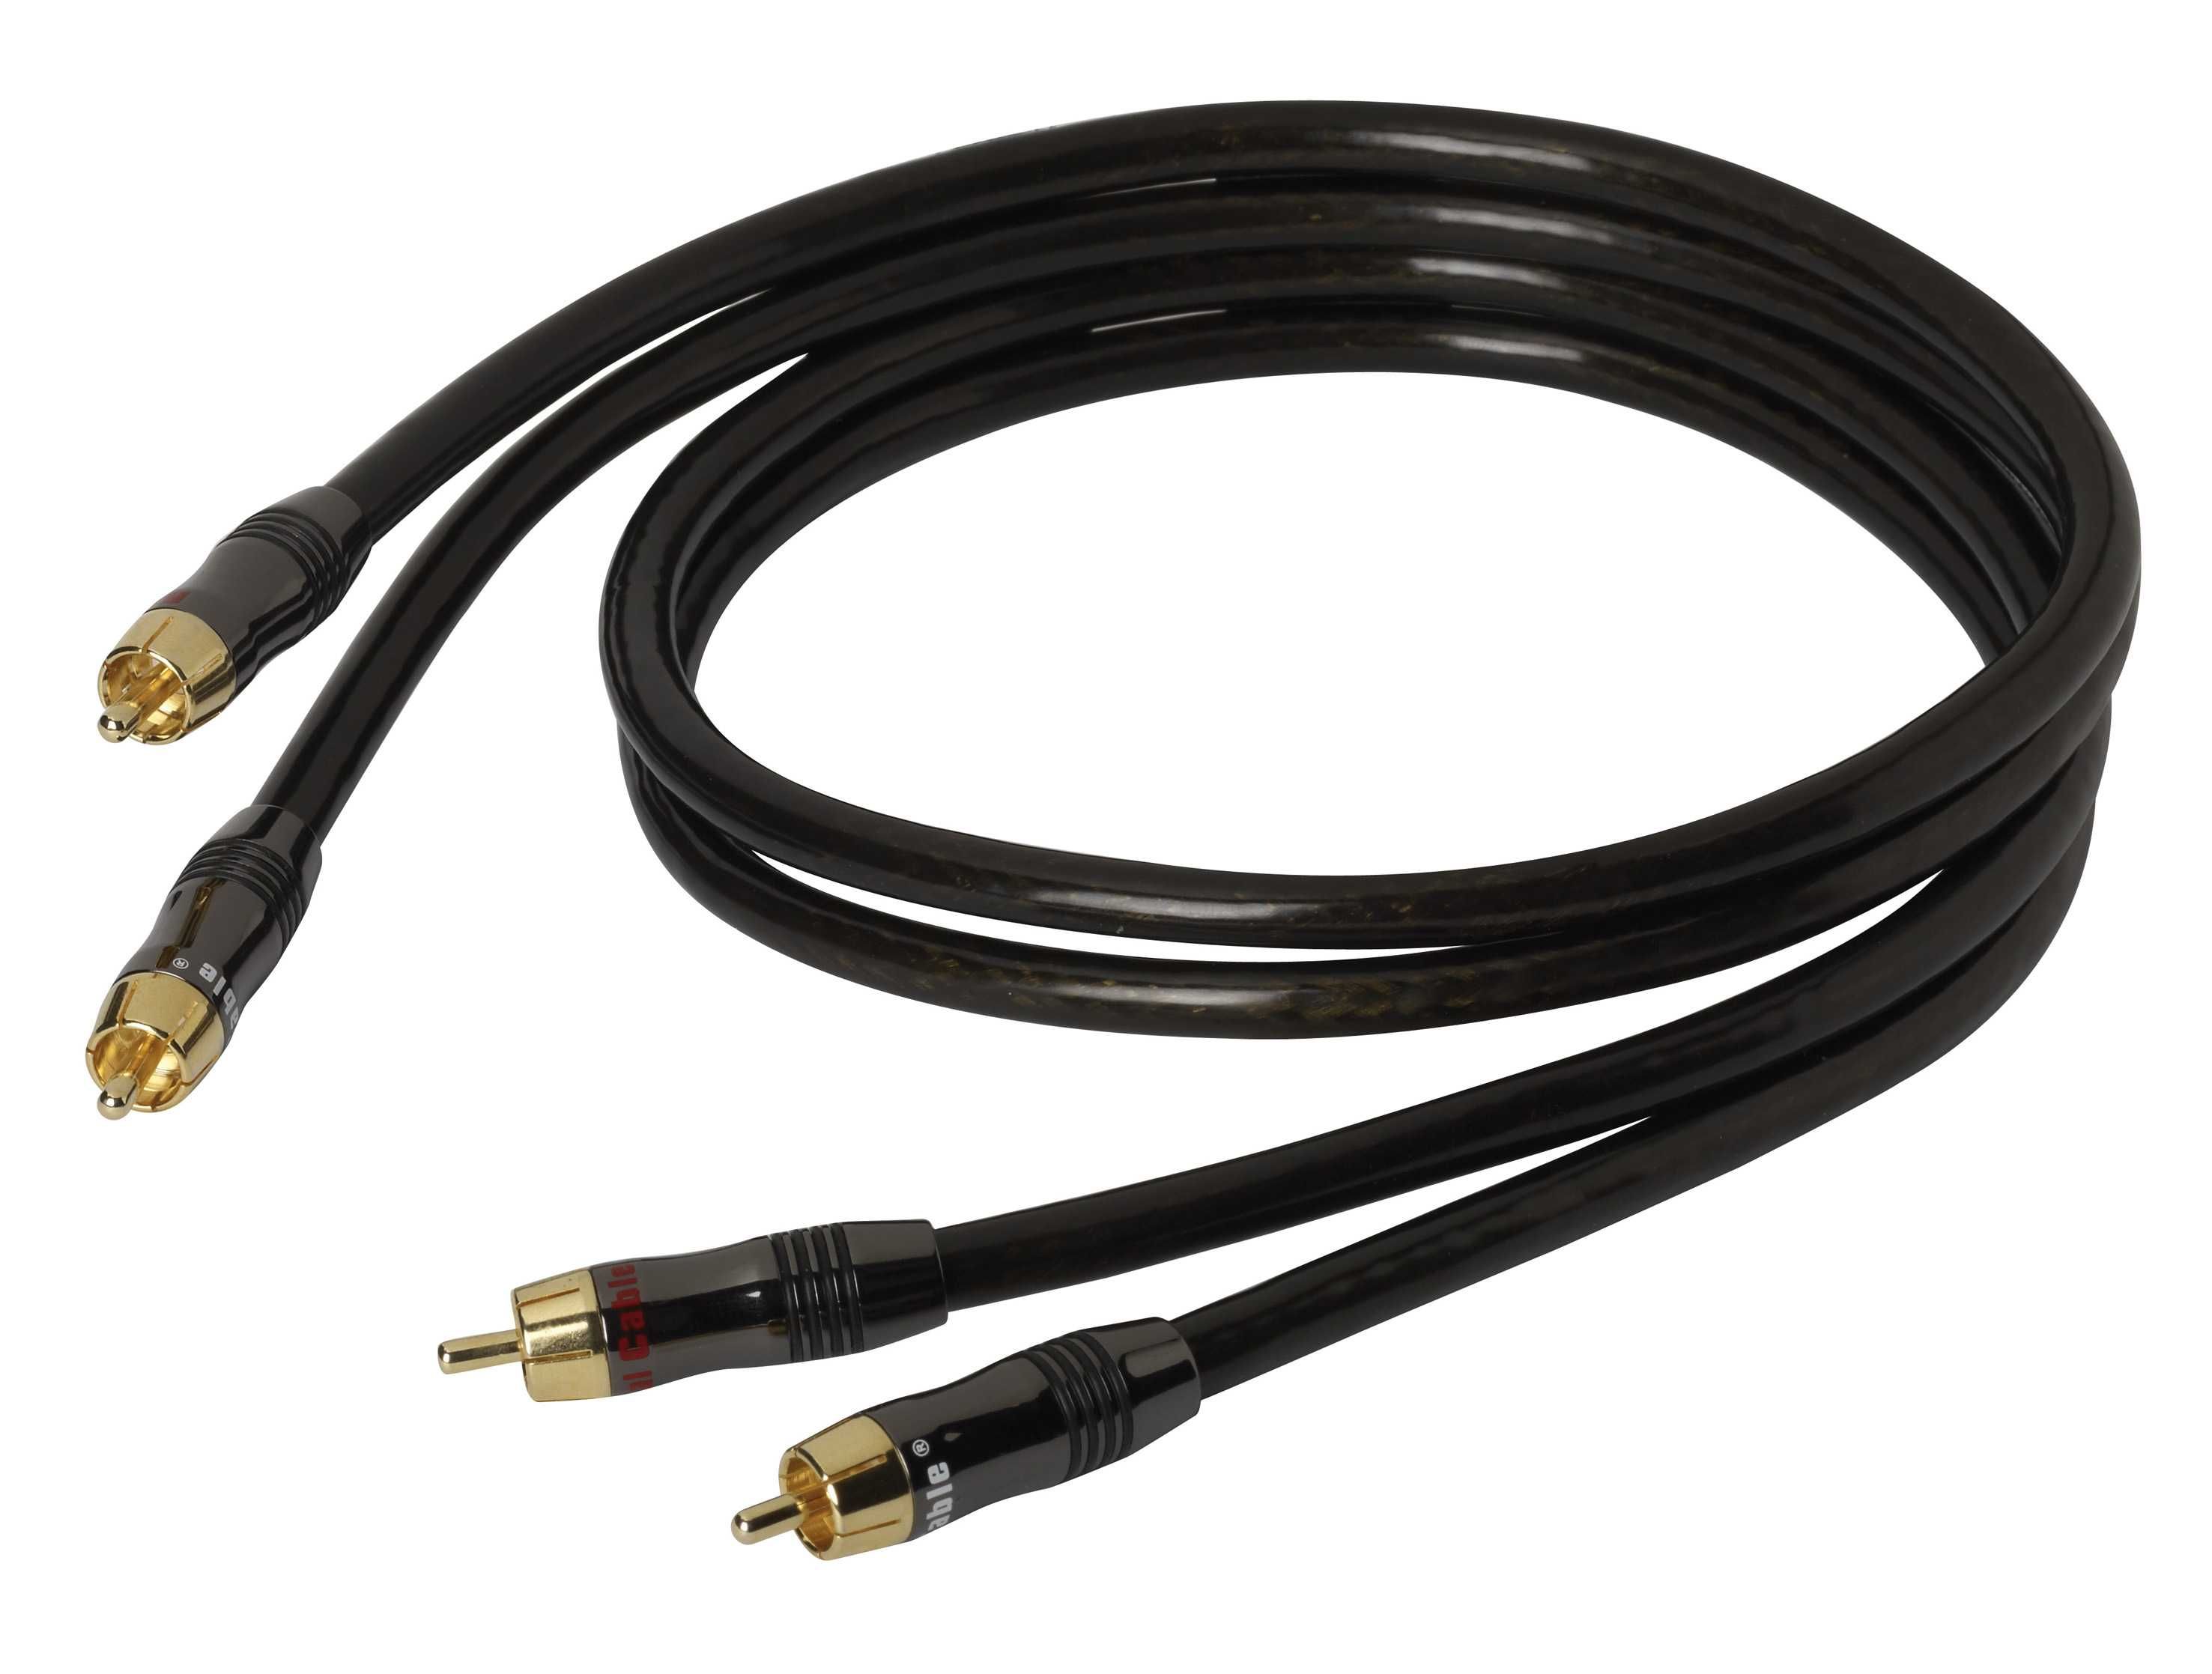 Cabo de interligação audio, com 1m, da Real Cable, com Fichas de metal